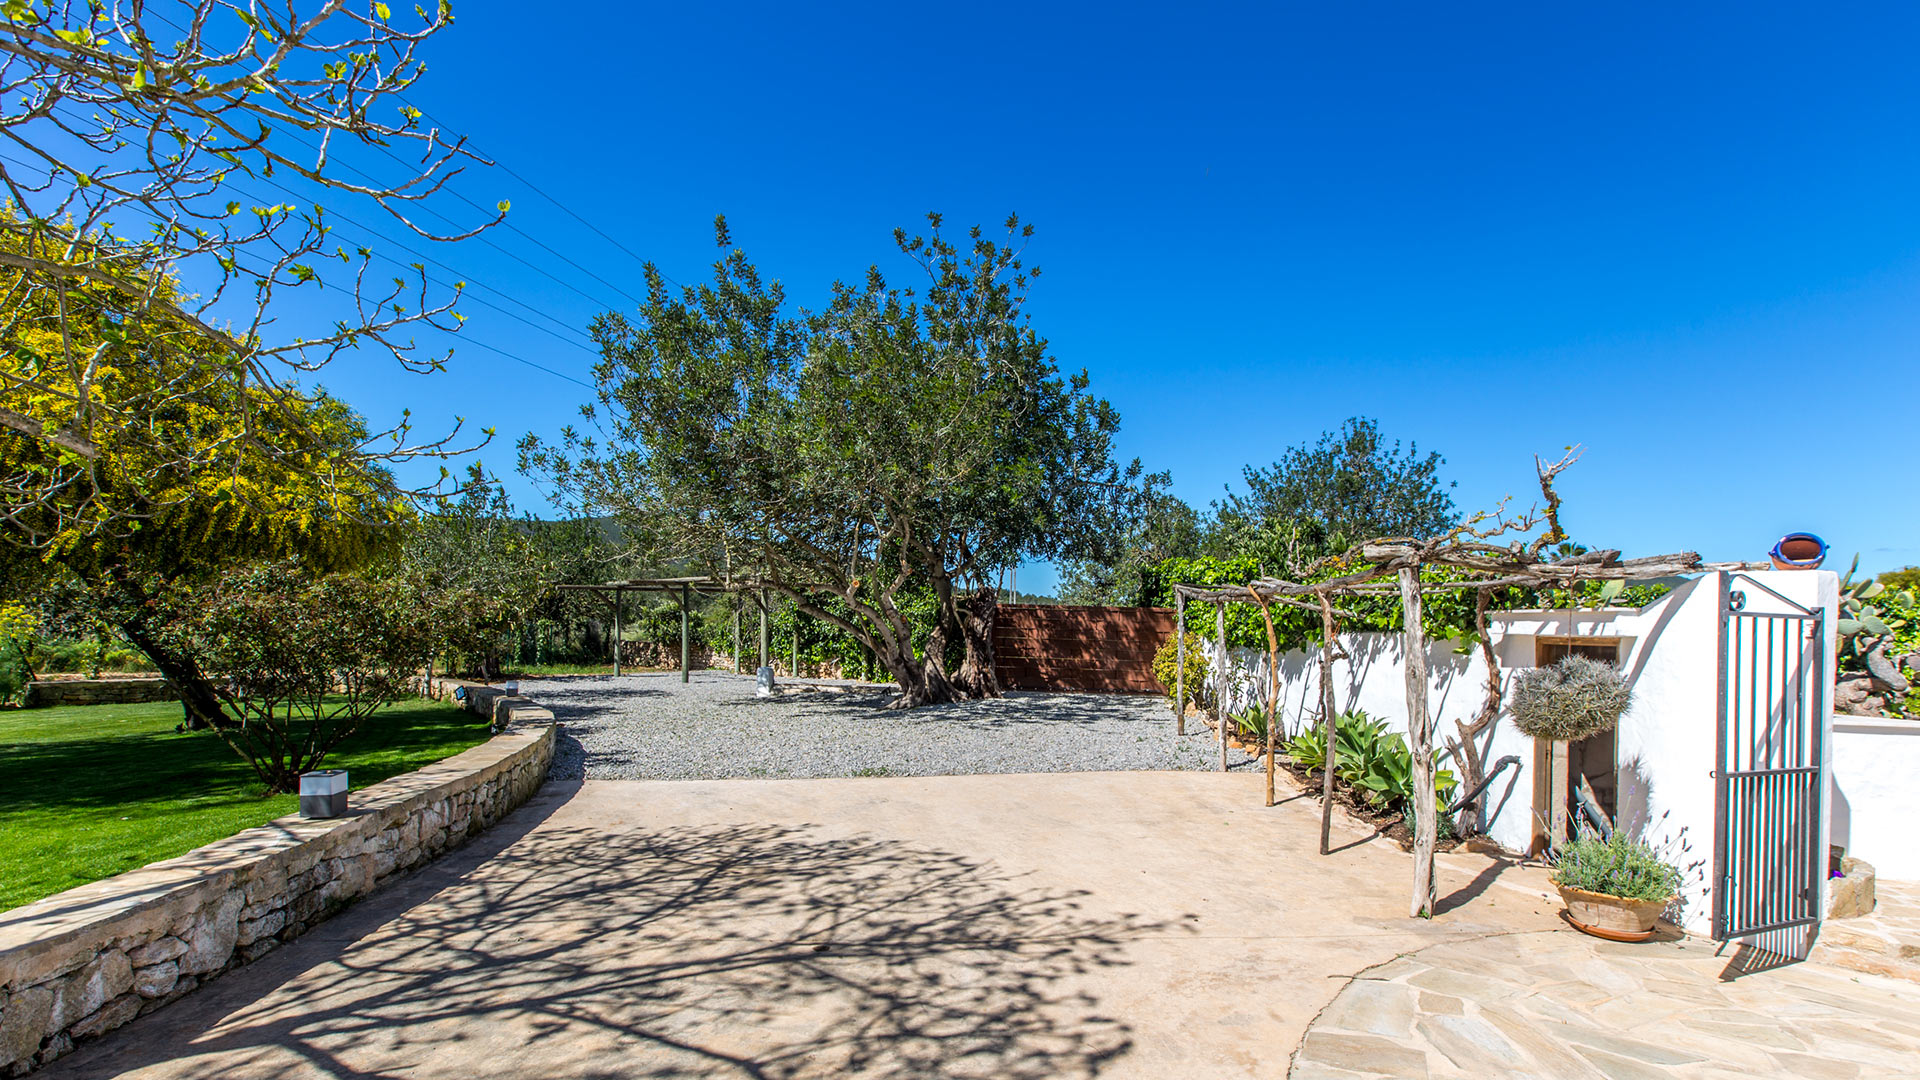 Villa Alta Arabi, Rental in Ibiza